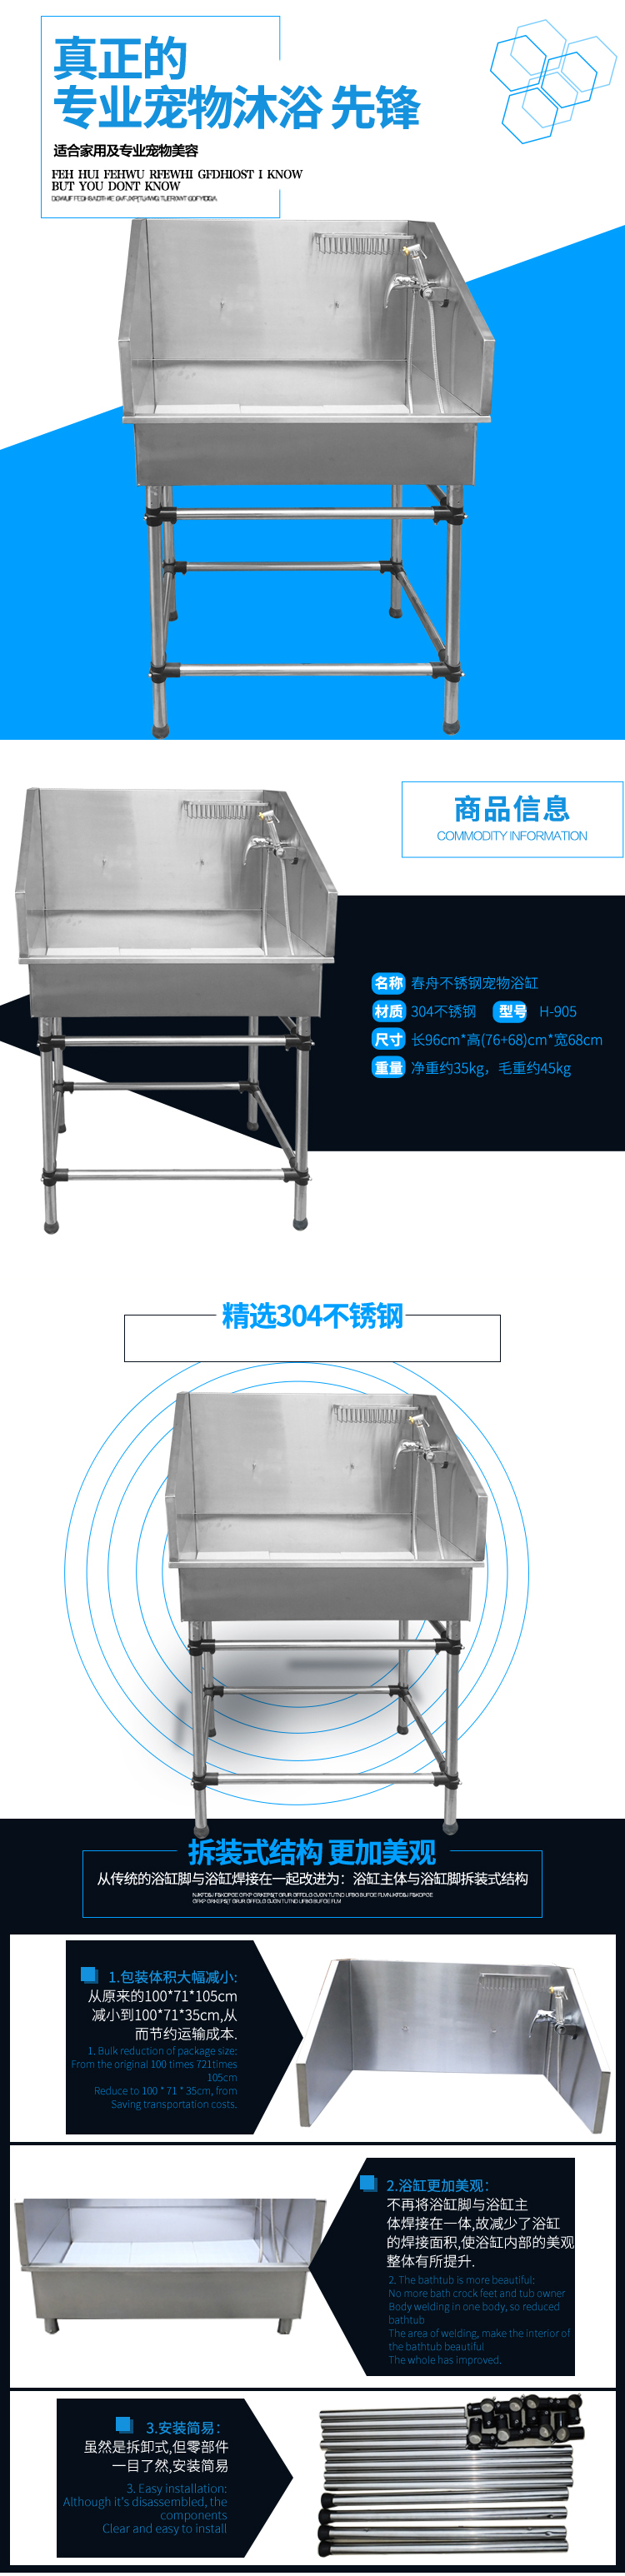 不锈钢浴缸H-905